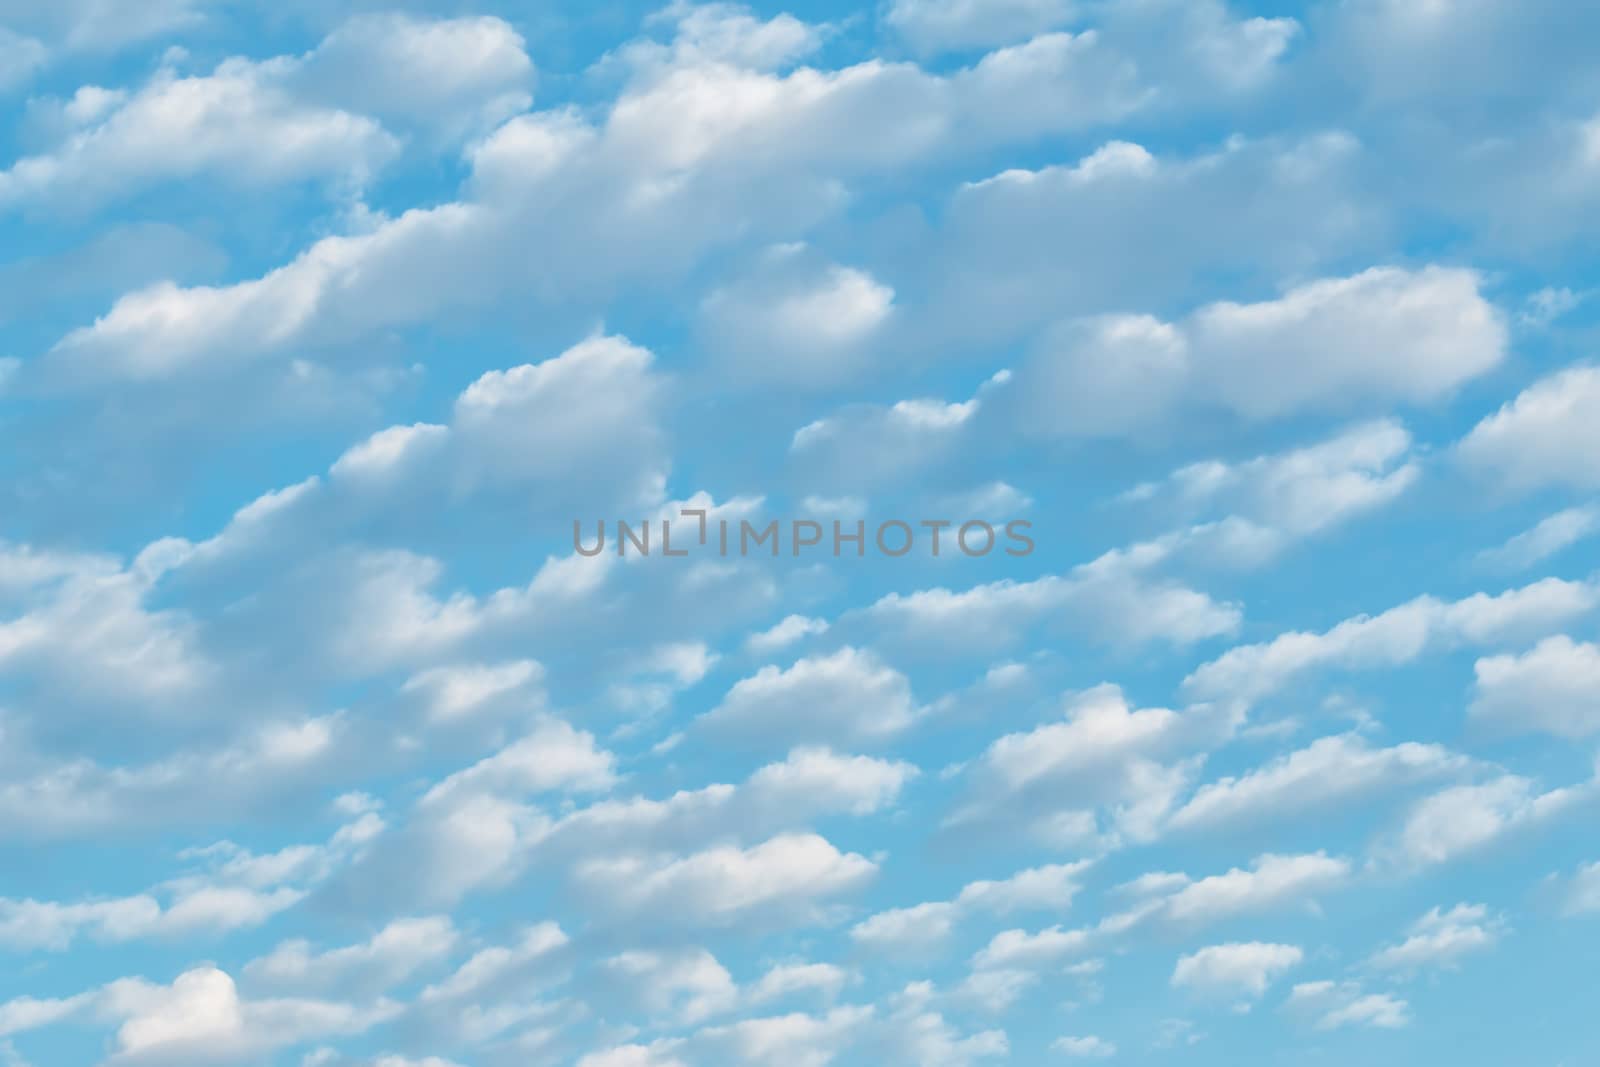 White cumulus clouds and a blue sky